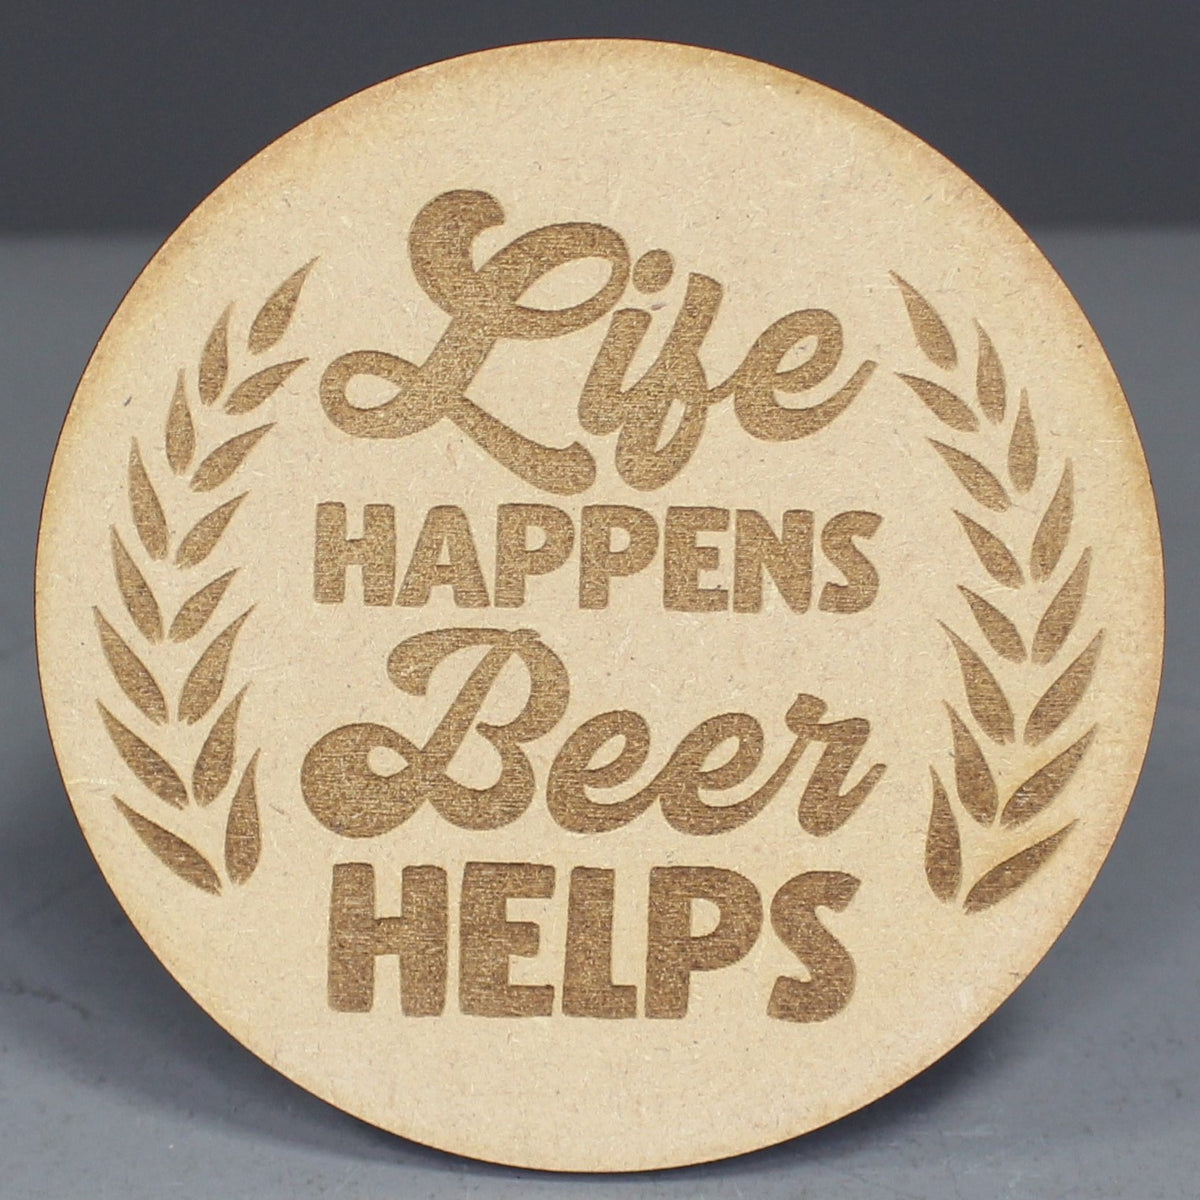 Coaster - Life Happens Beer Helps 4 Pack - Slate & Rose